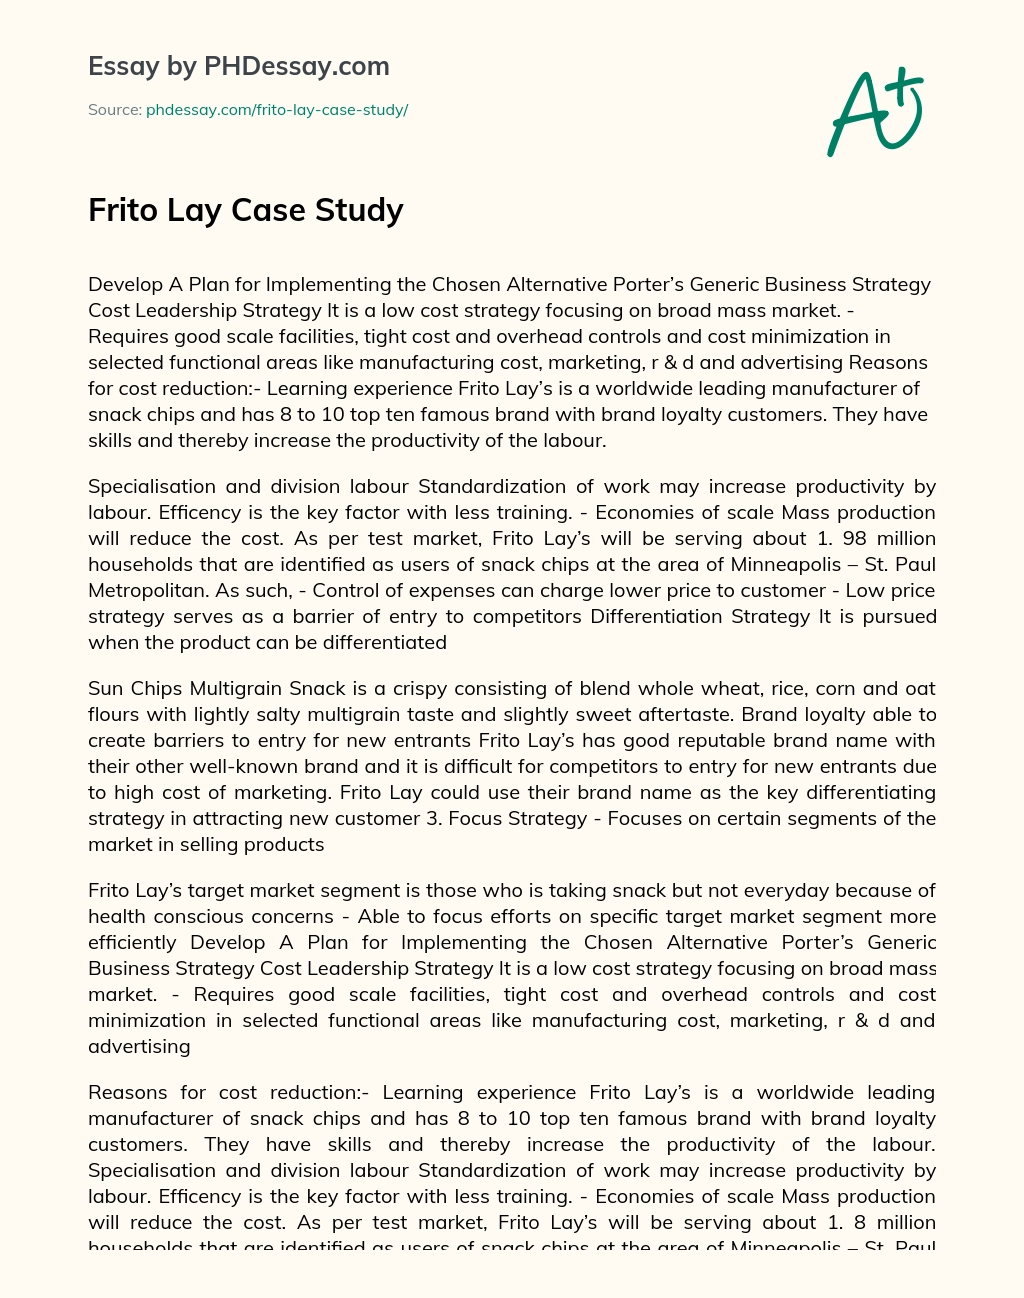 Frito Lay Case Study essay